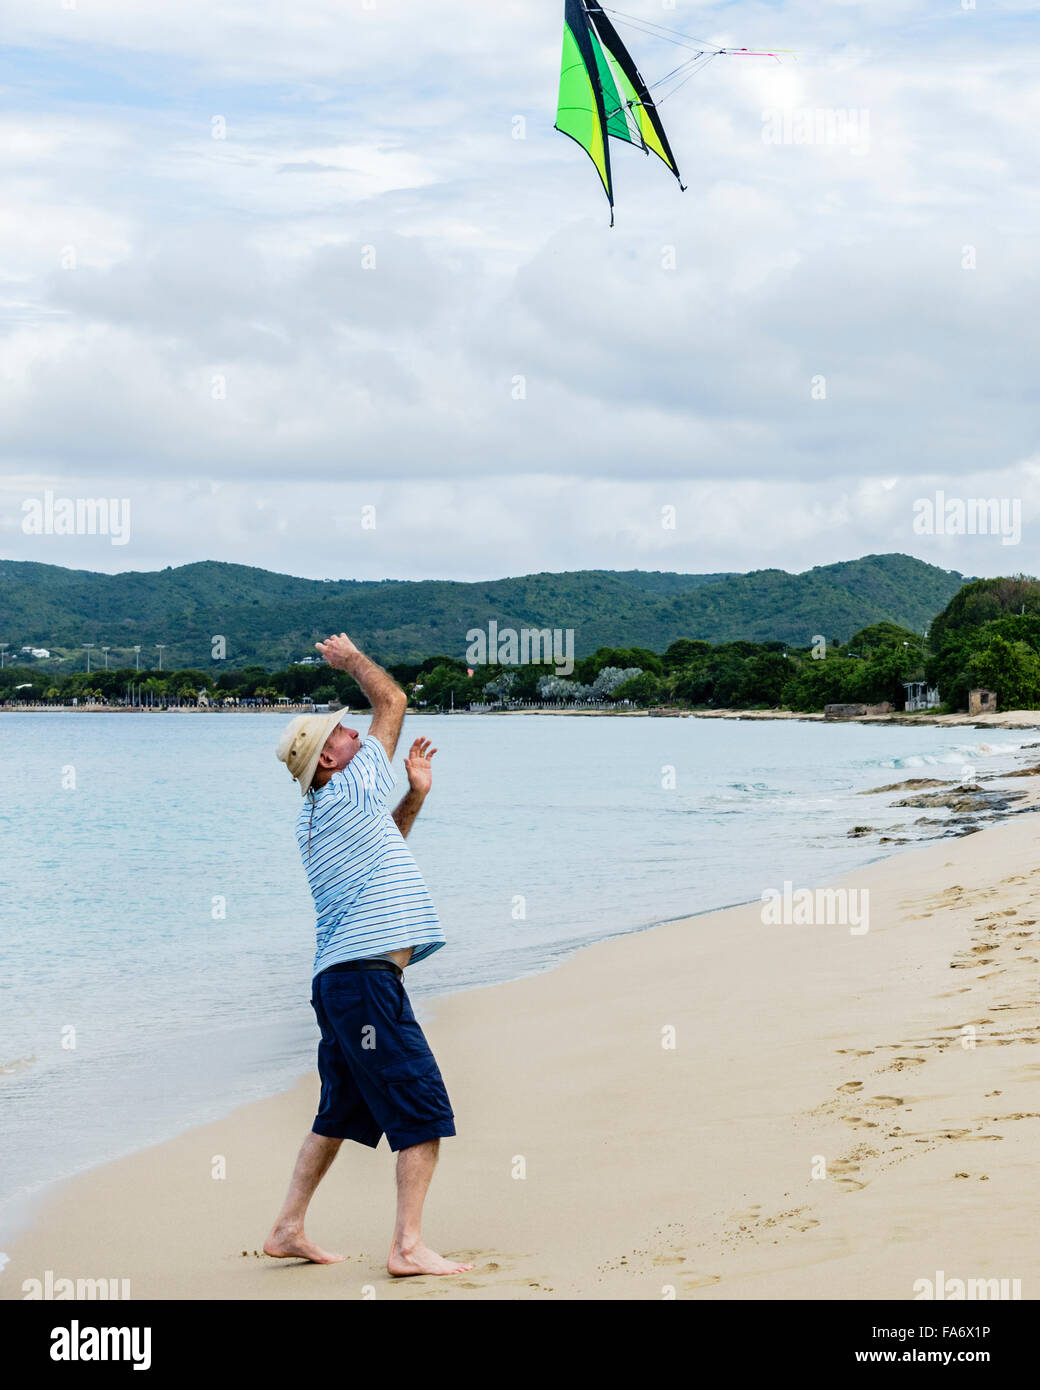 Ein senior kaukasischen Mann wirft einen Drachen in der Luft, einen Freund am Strand von St. Croix, Amerikanische Jungferninseln zu starten. Stockfoto